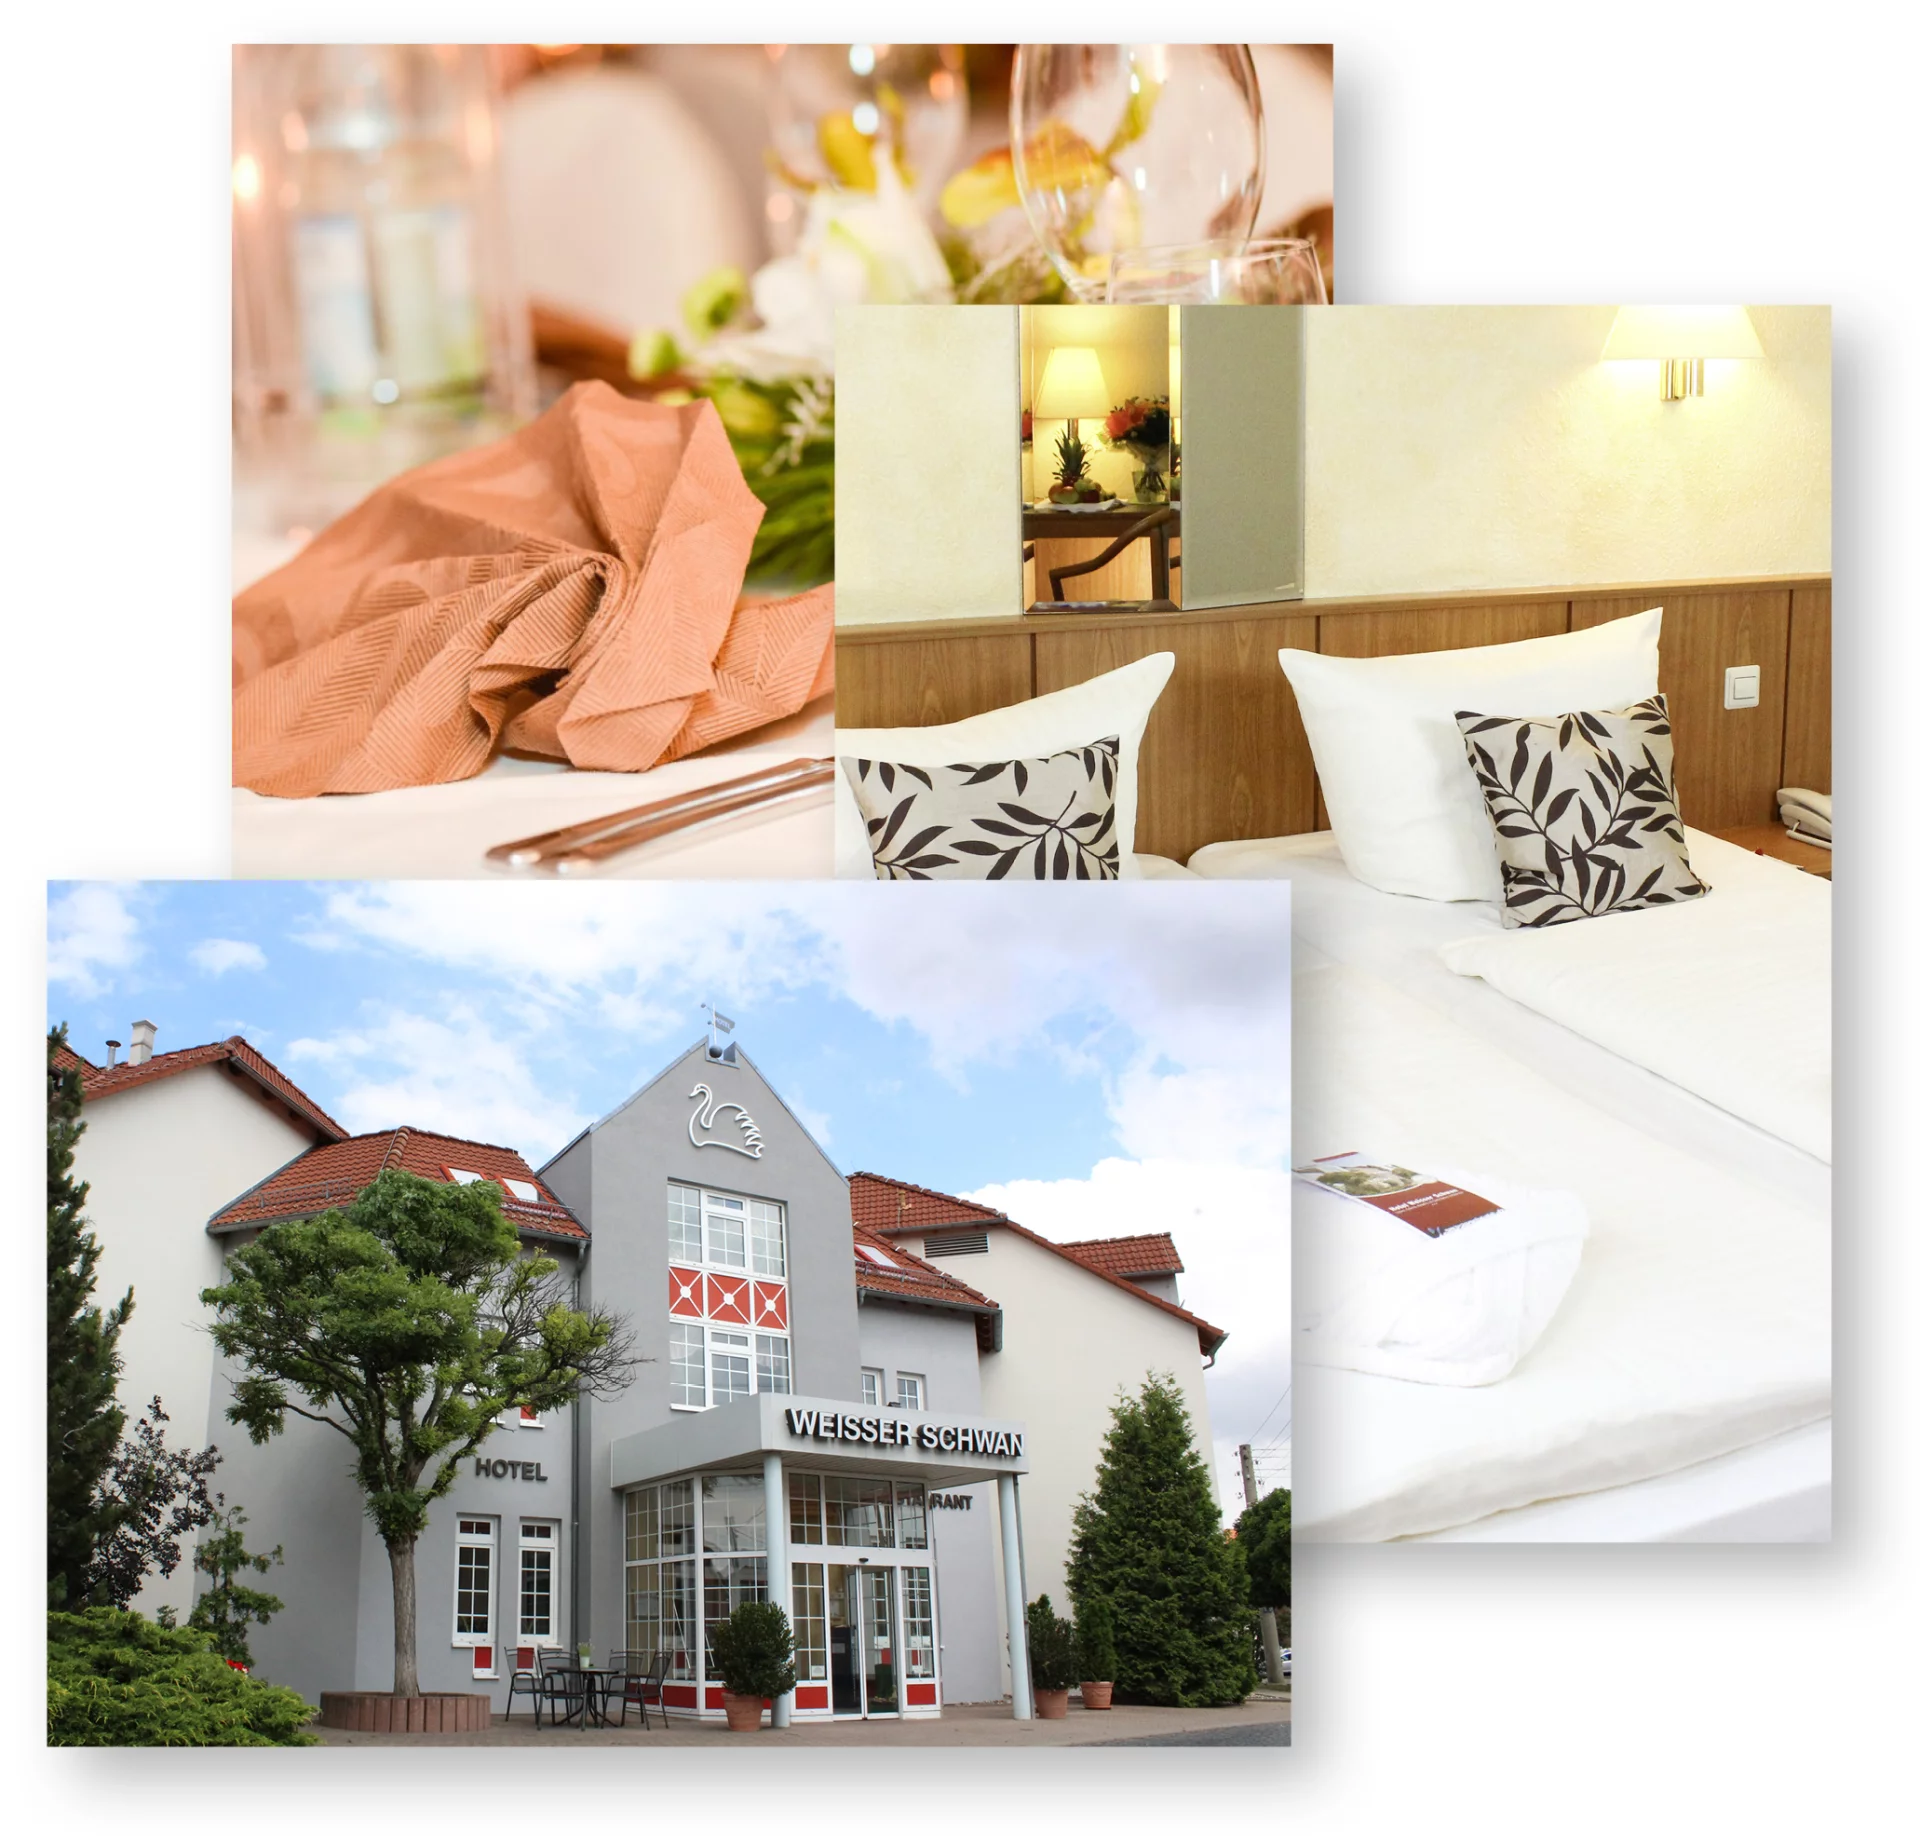 Hotel Erfurt "Weisser Schwan"